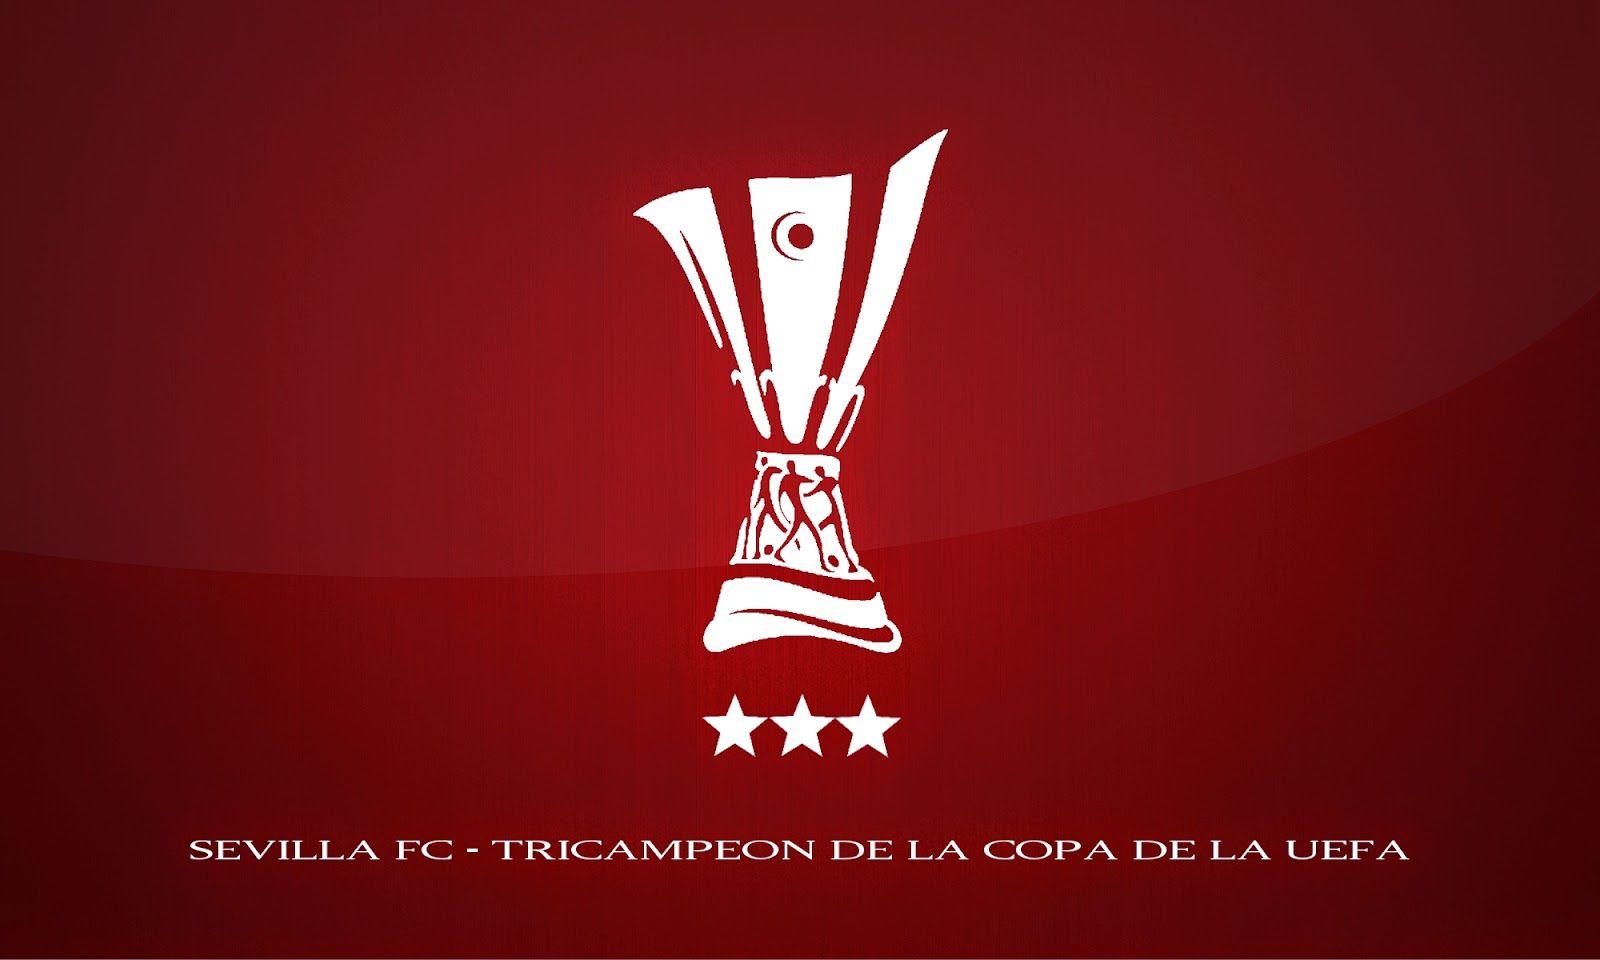 Sevilla FCón de la Copa de la UEFA. Wallpaper Sevilla FC